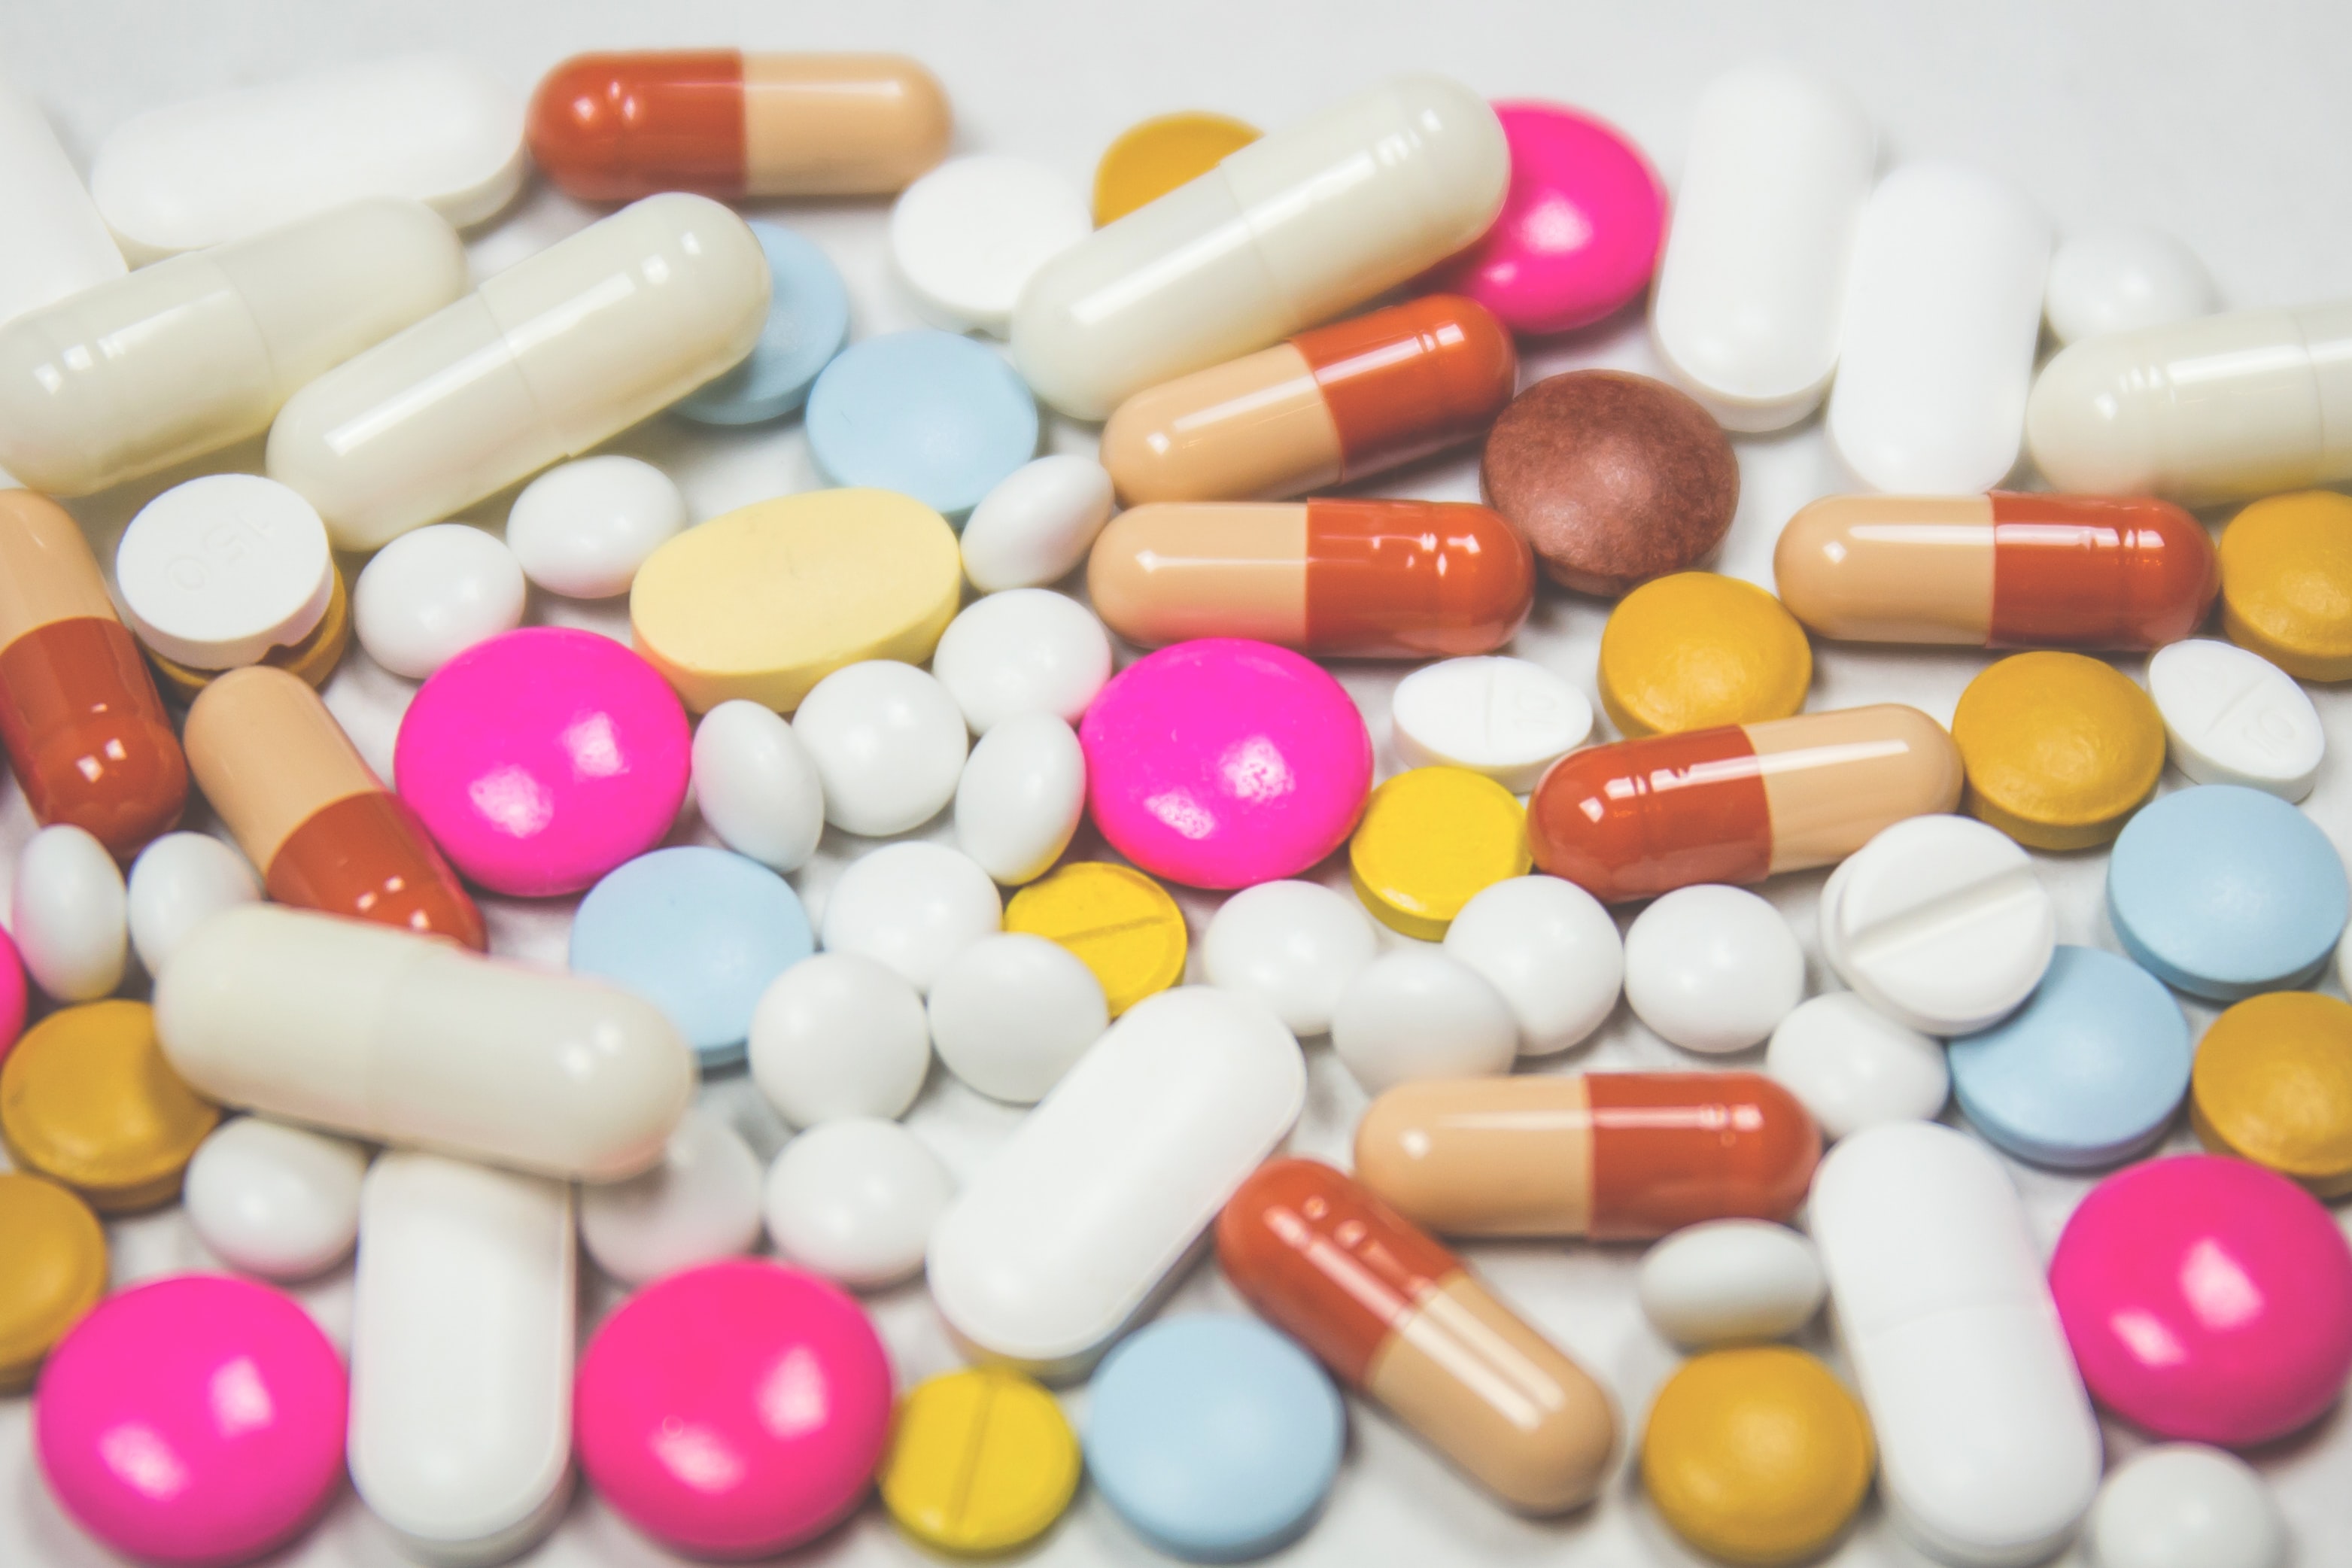 Užívání léků s ibuprofenem a paracetamolem s ohledem na výskyt nemoci COVID-19